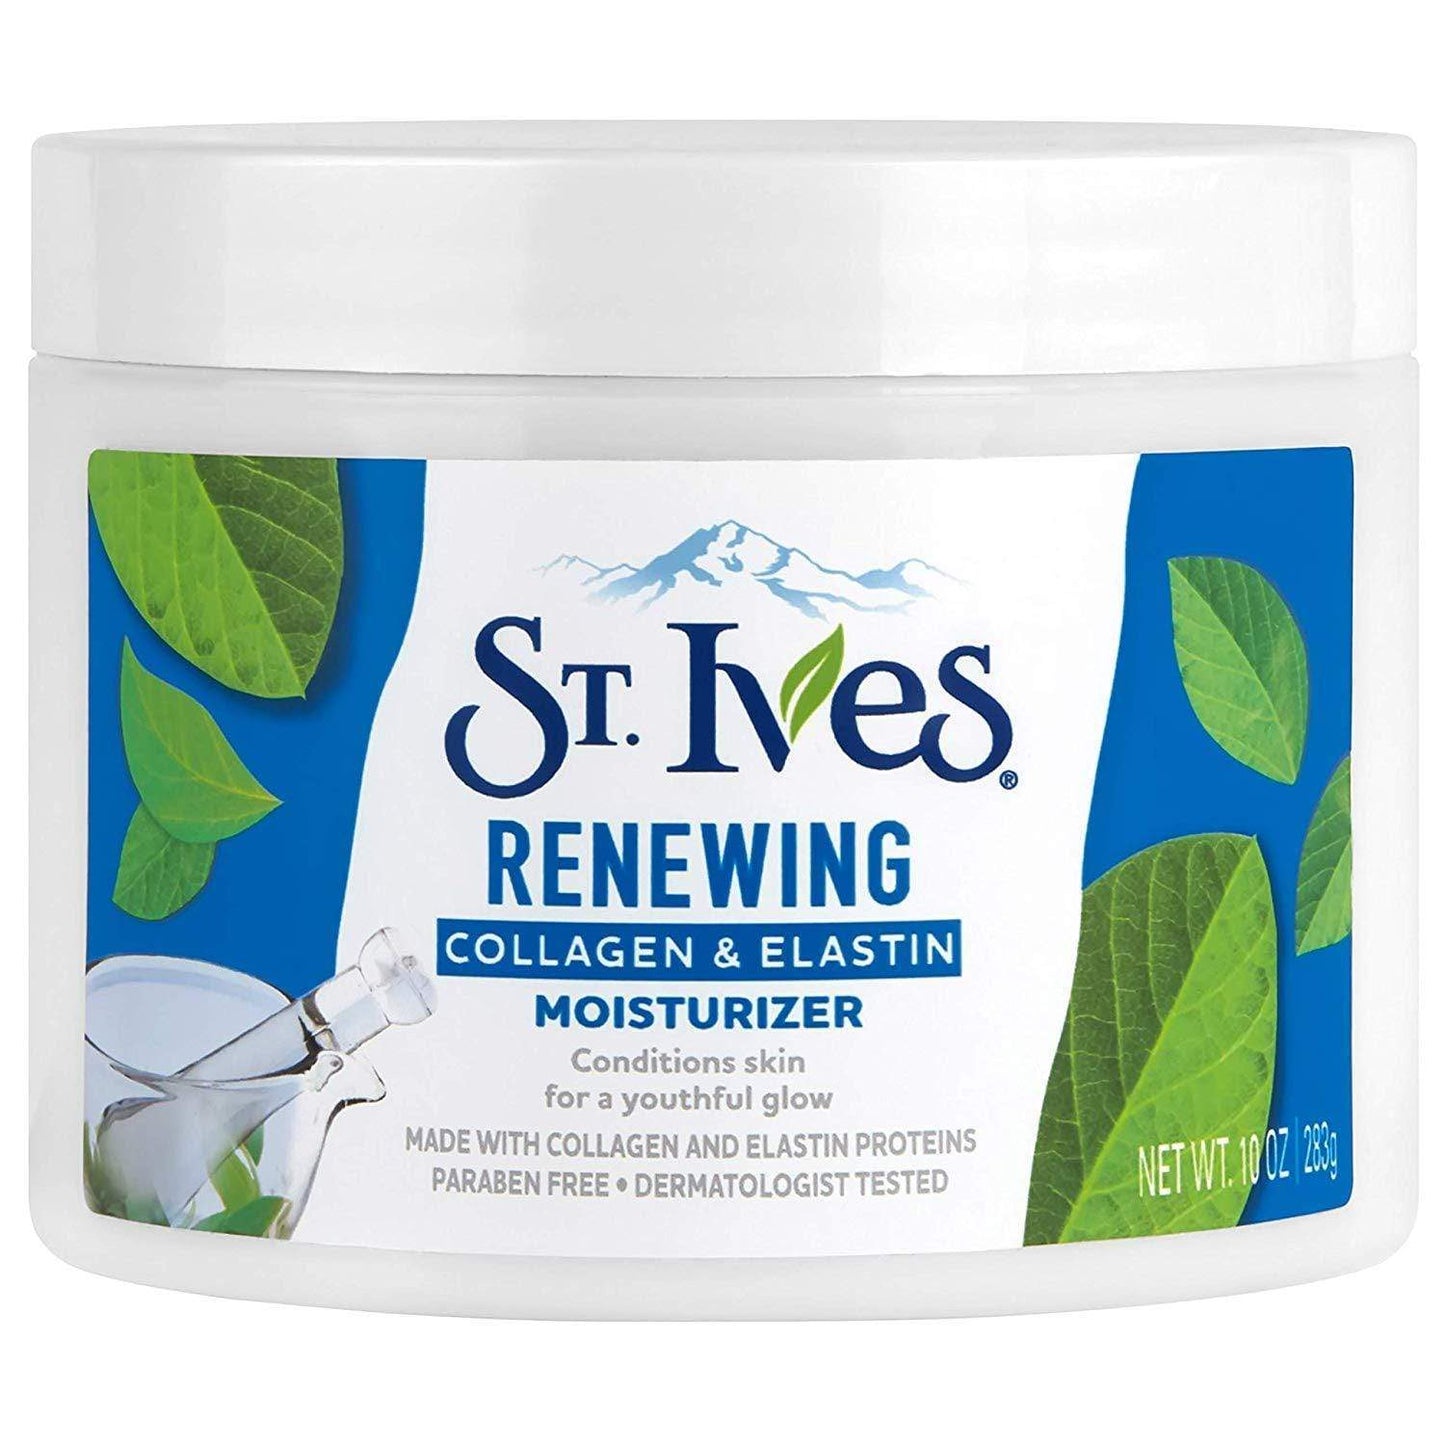 St. Ives Facial Moisturizer for Dry Skin, Collagen Elastin Minoustore